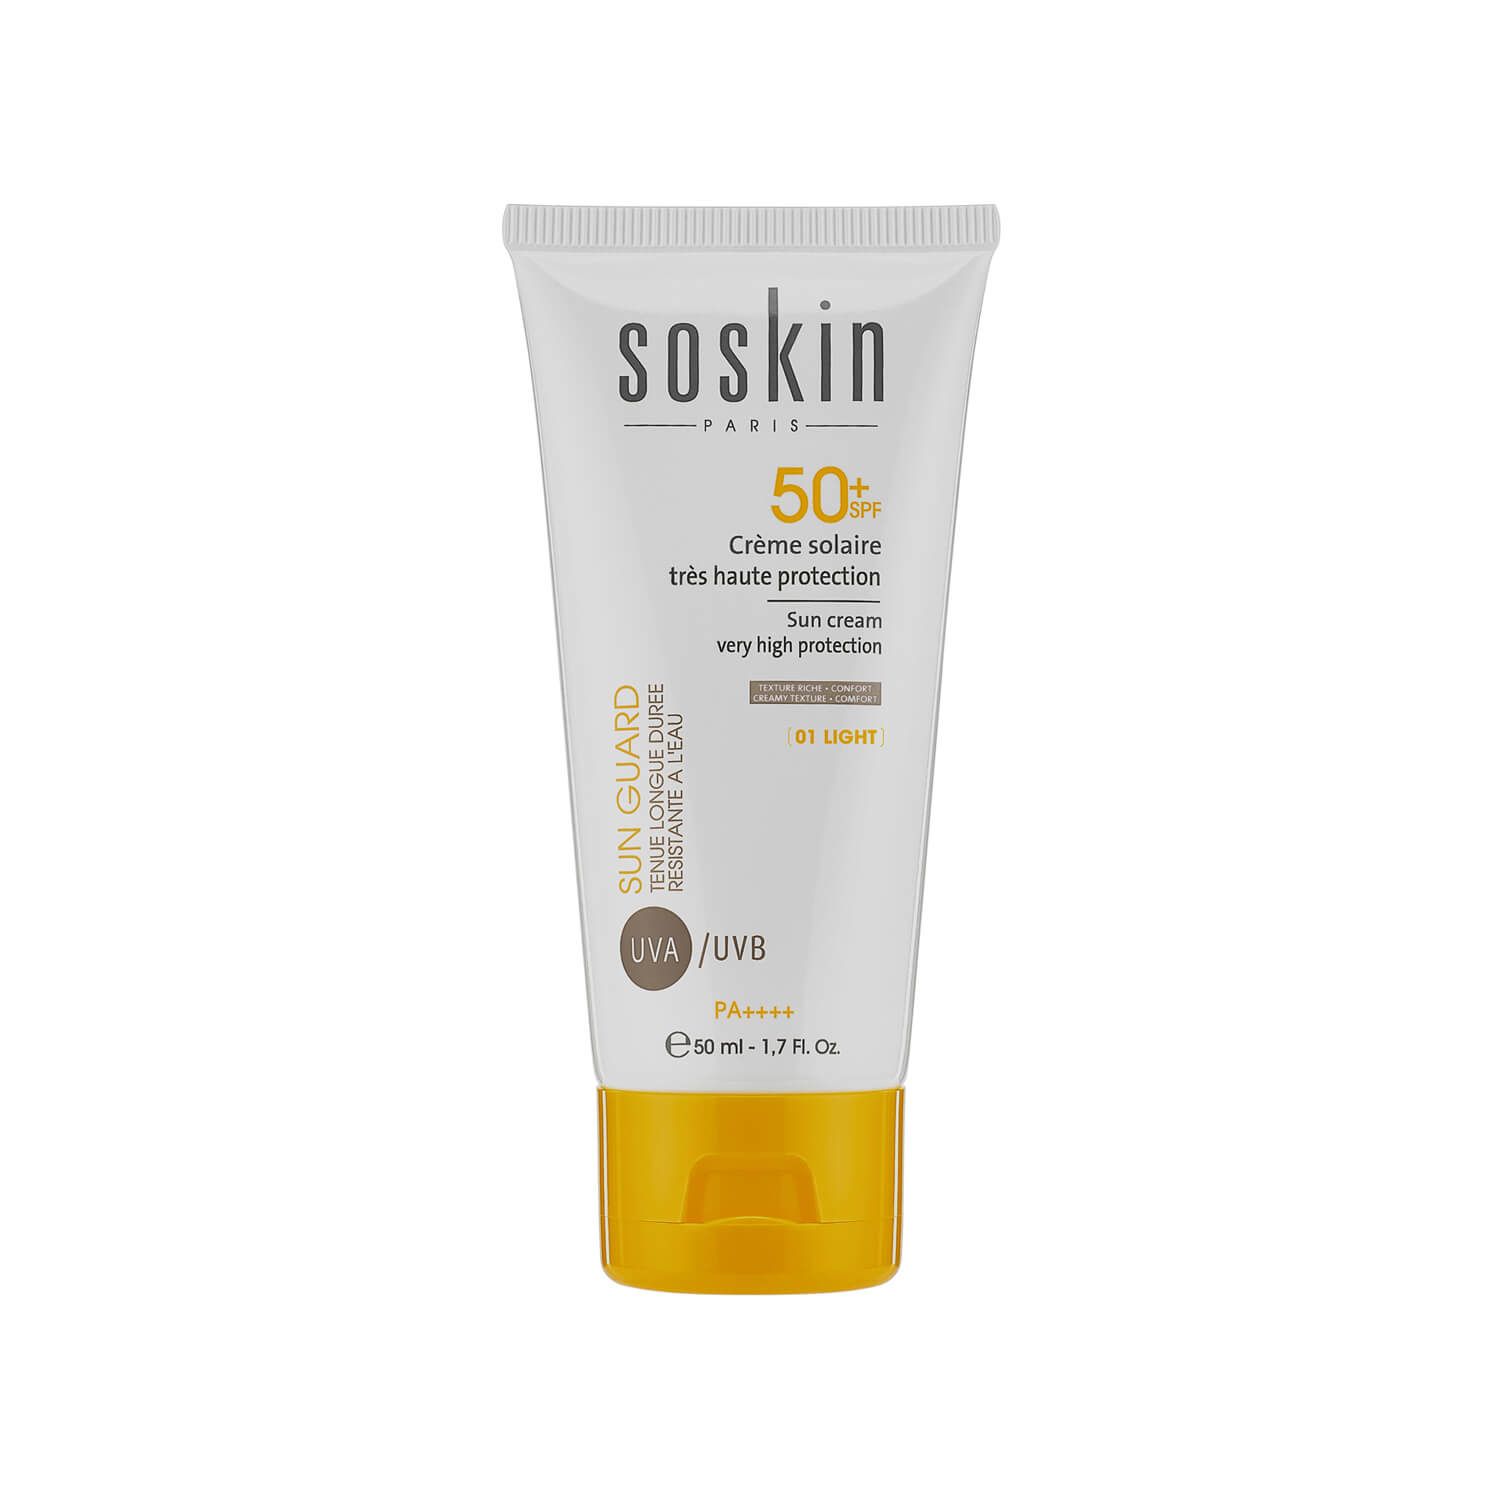 کرم ضد آفتاب SPF 50 ساسکین مناسب انواع پوست حجم 50 میلی لیتر - رنگی